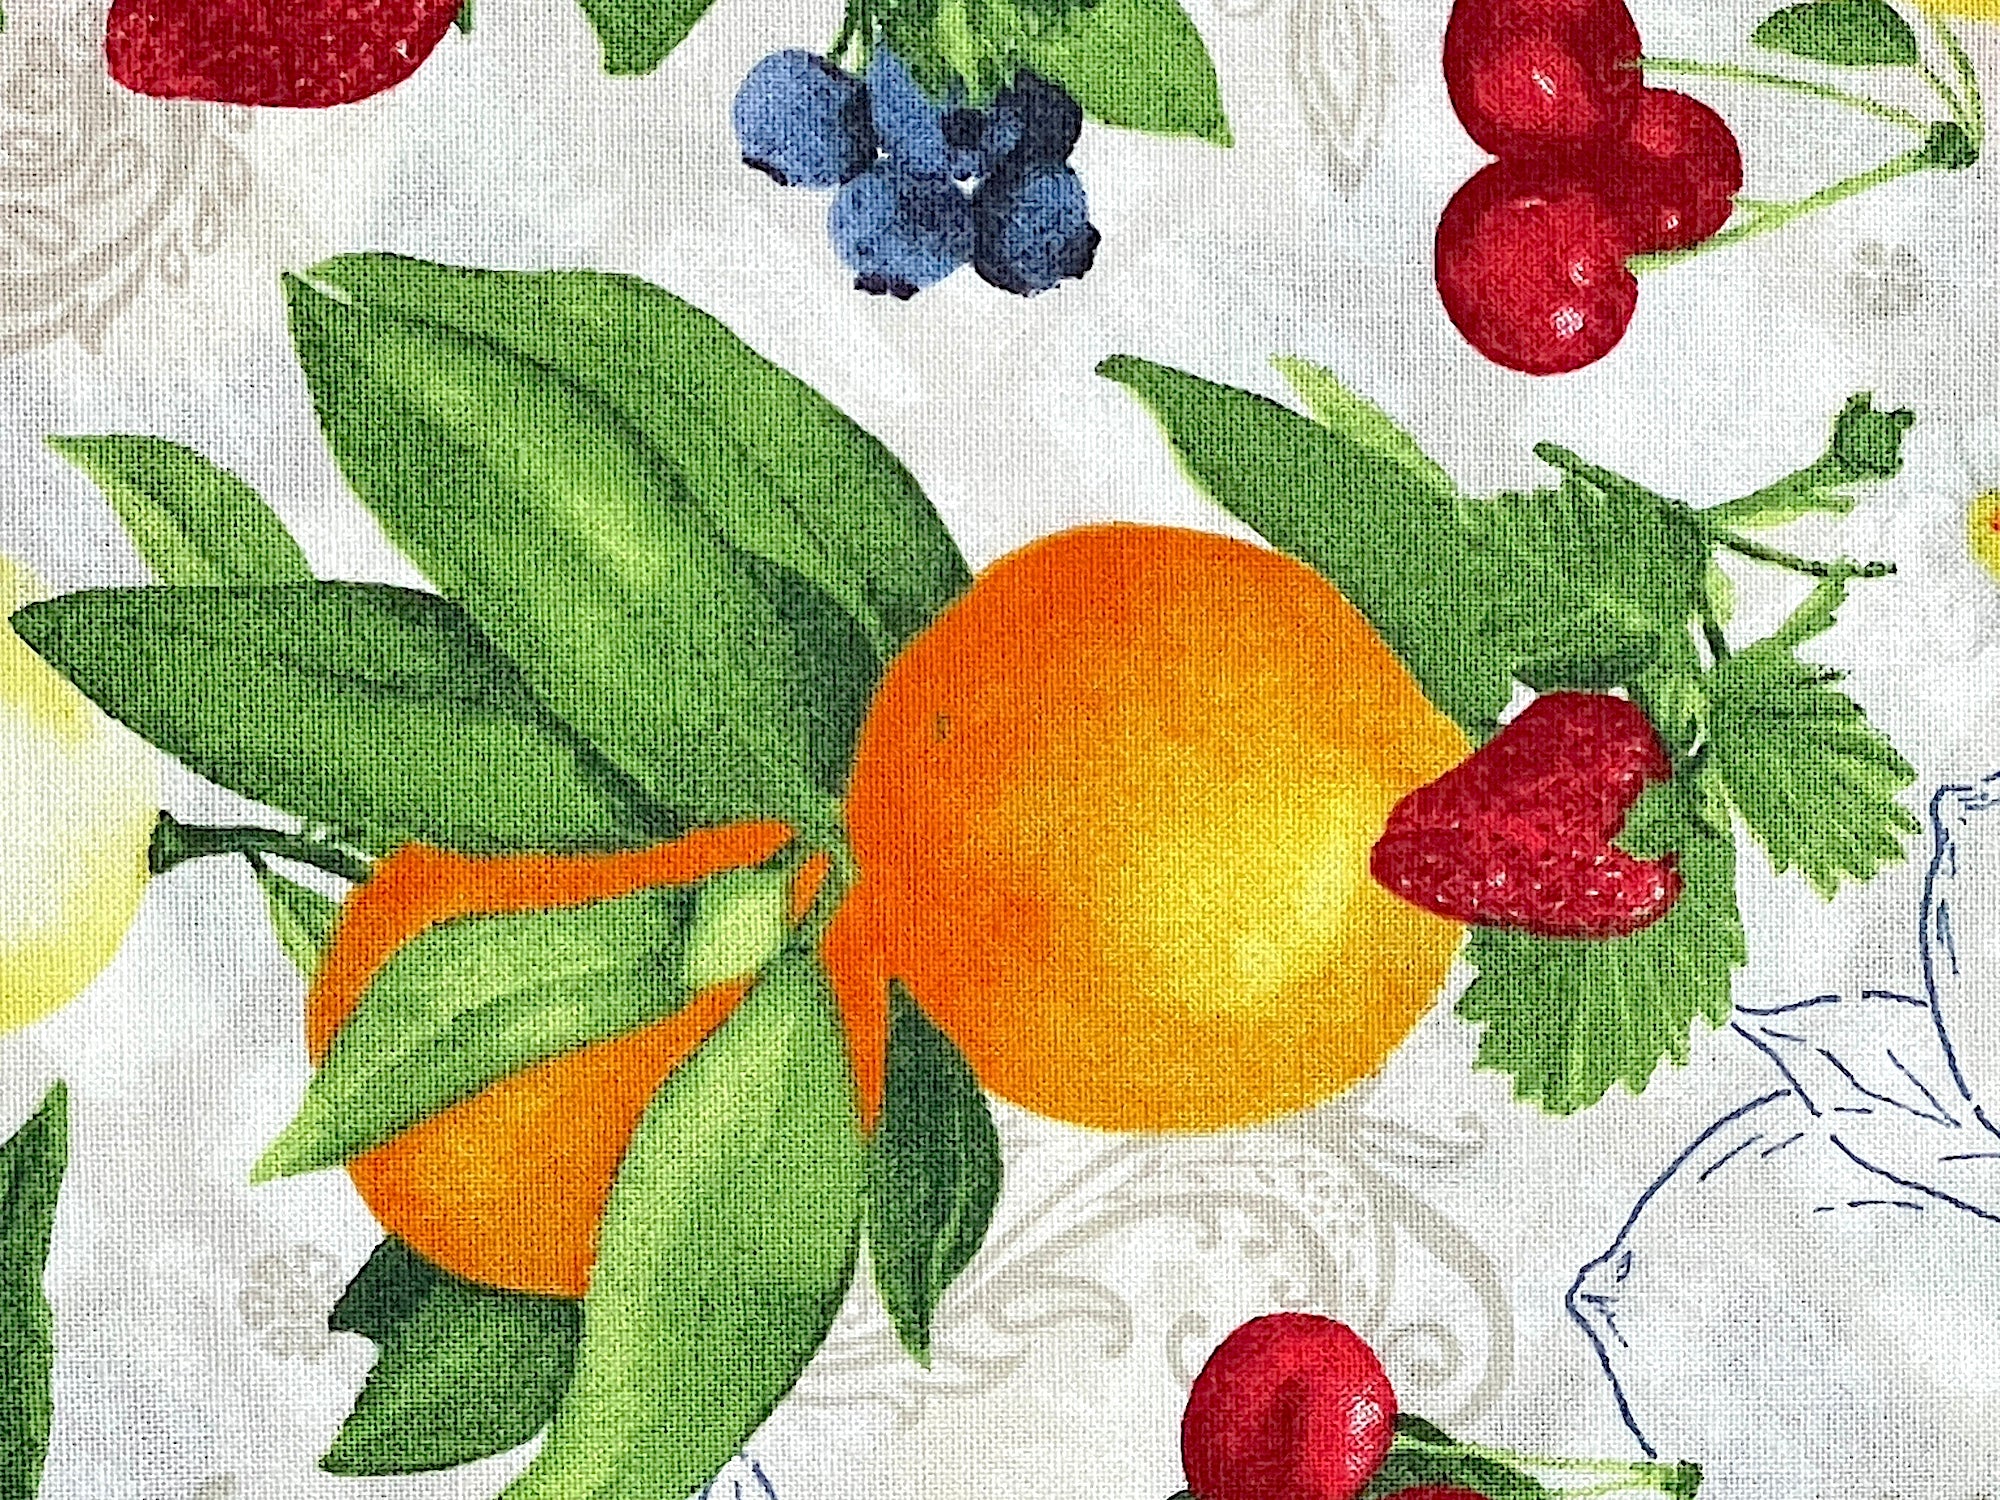 Close up of oranges.